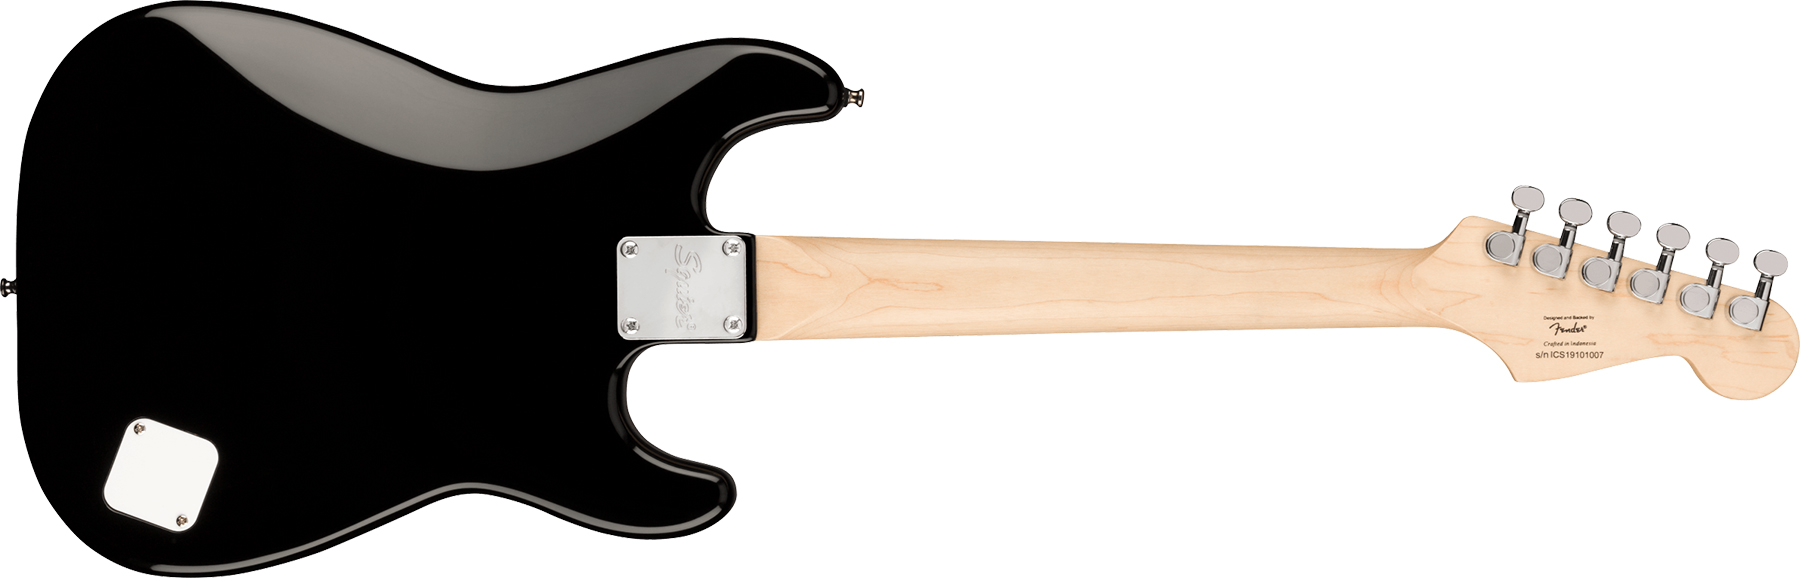 Squier Mini Strat V2 Lh Gaucher Ht Sss Lau - Black - Linkshandige elektrische gitaar - Variation 1